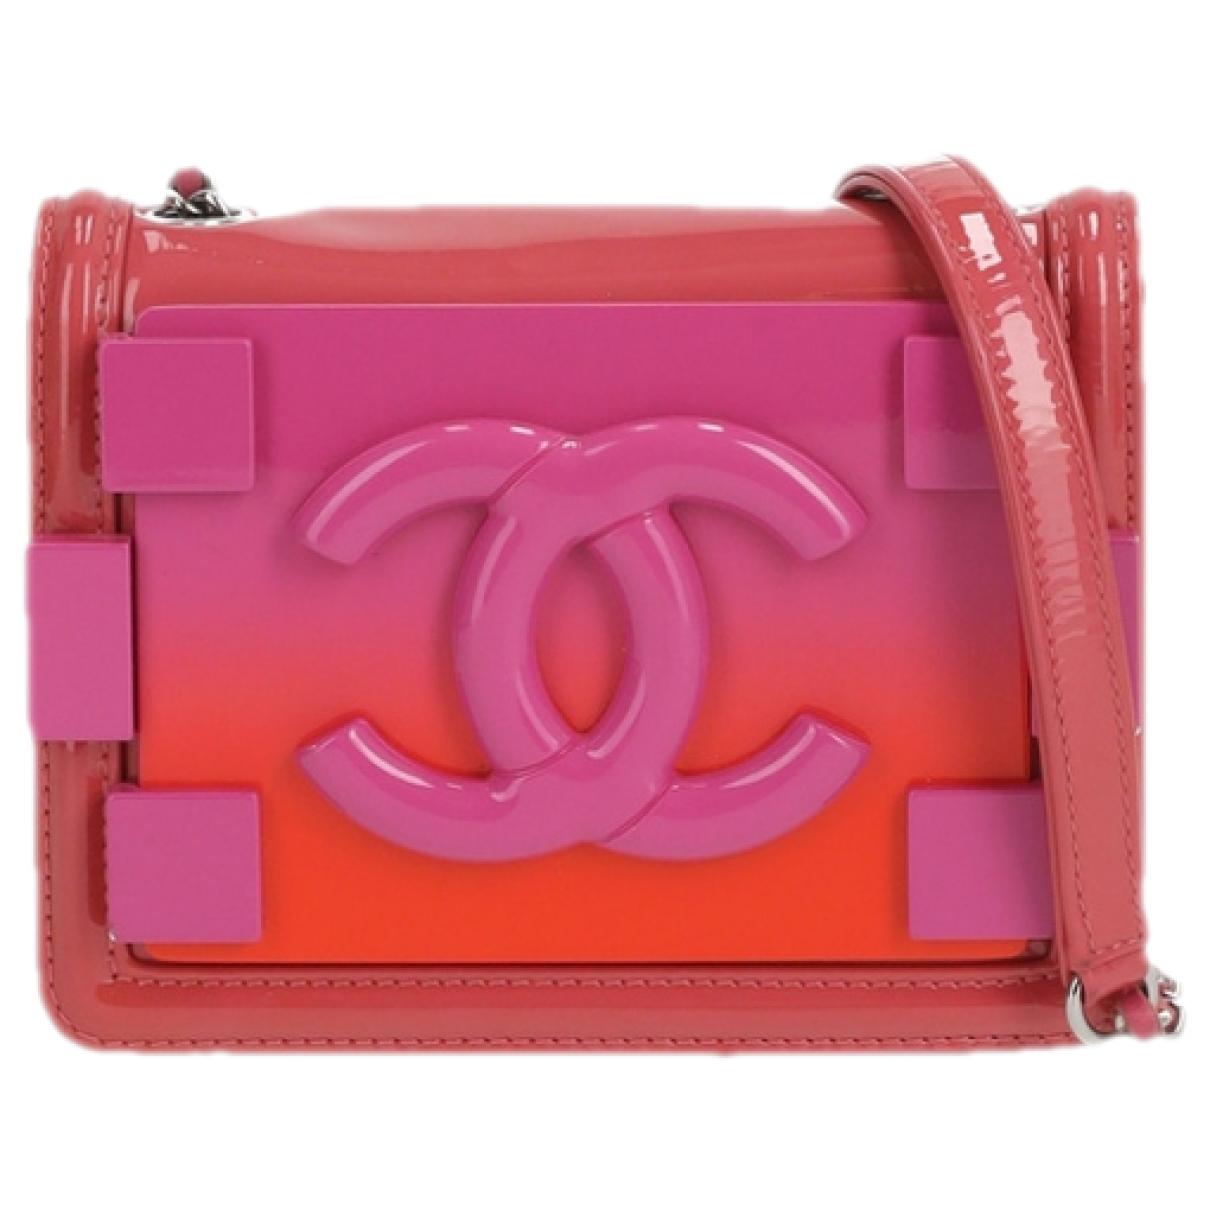 Légo Chanel Bags - Vestiaire Collective